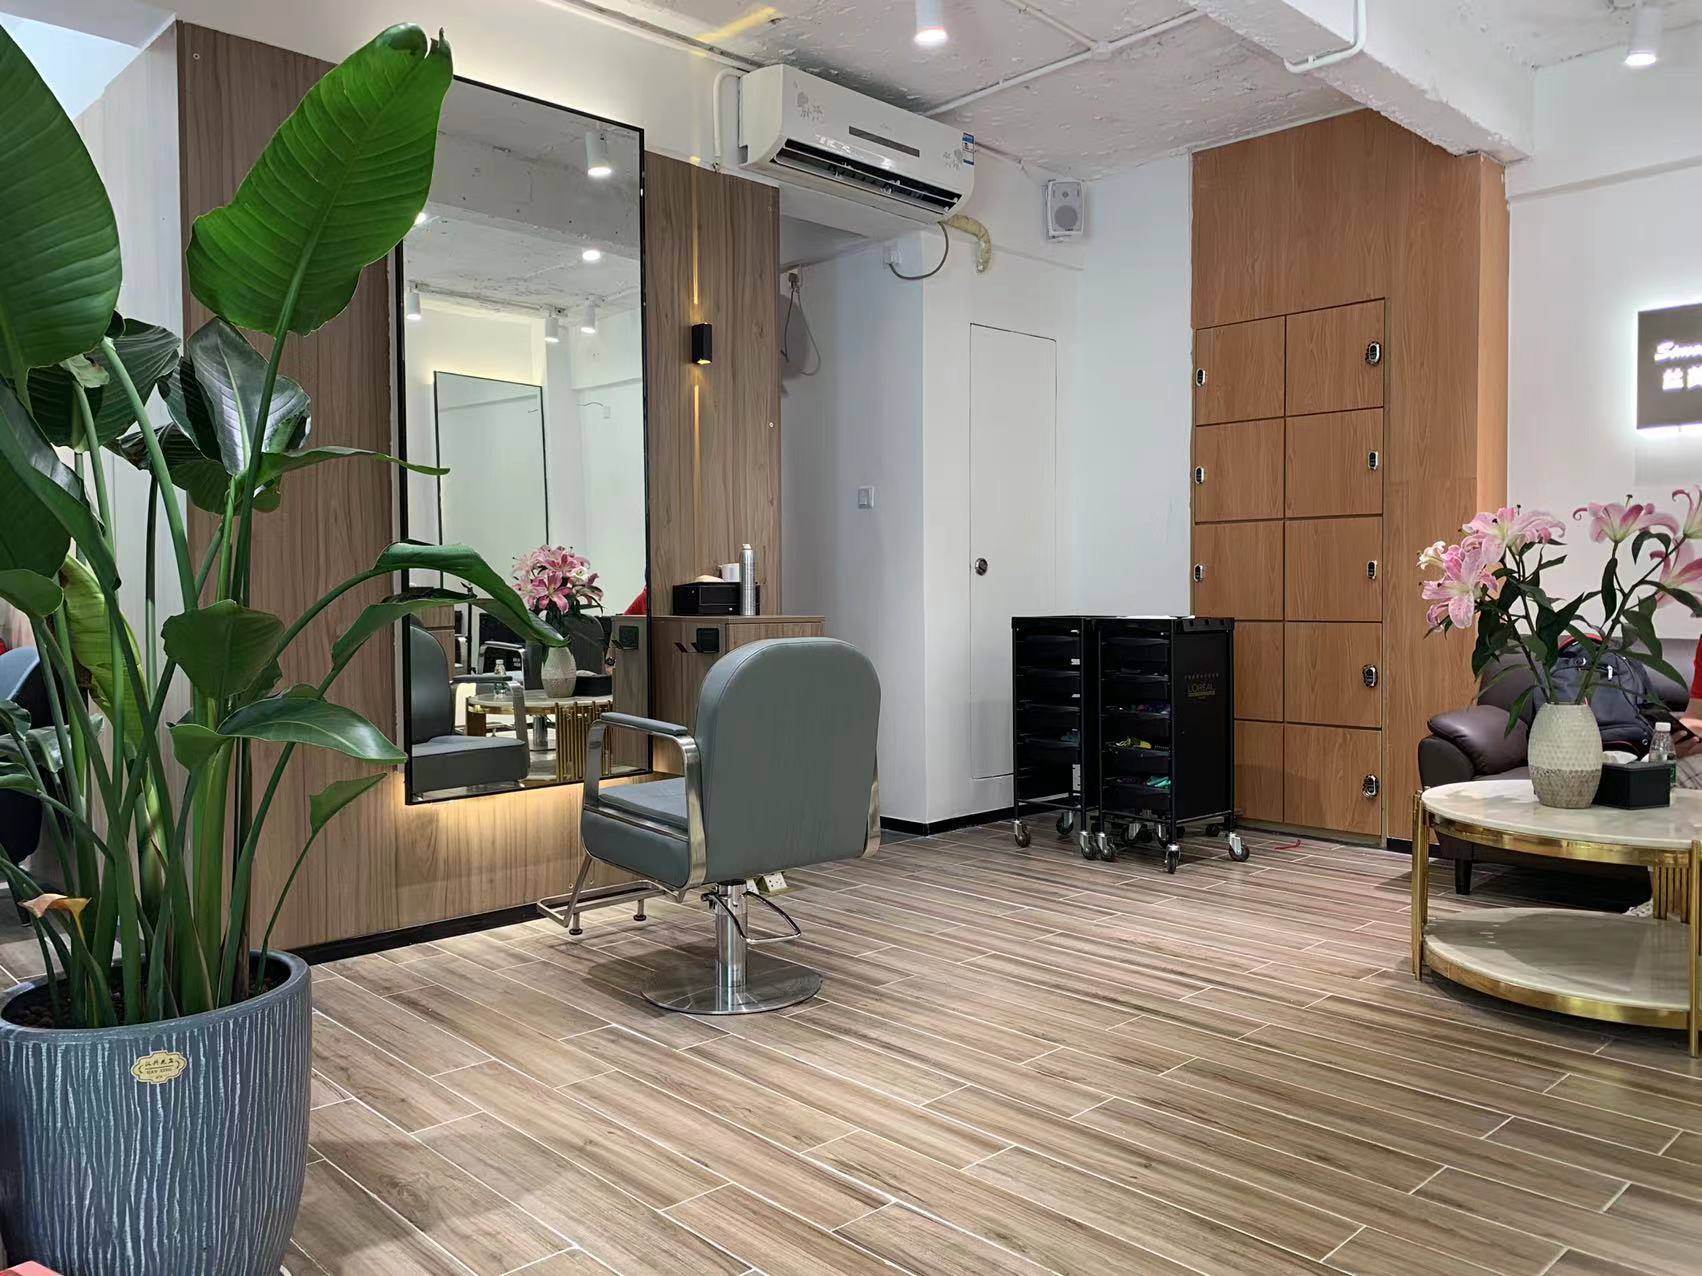 60平米办公室装修效果图分享~广州各大理发店也可以参考!